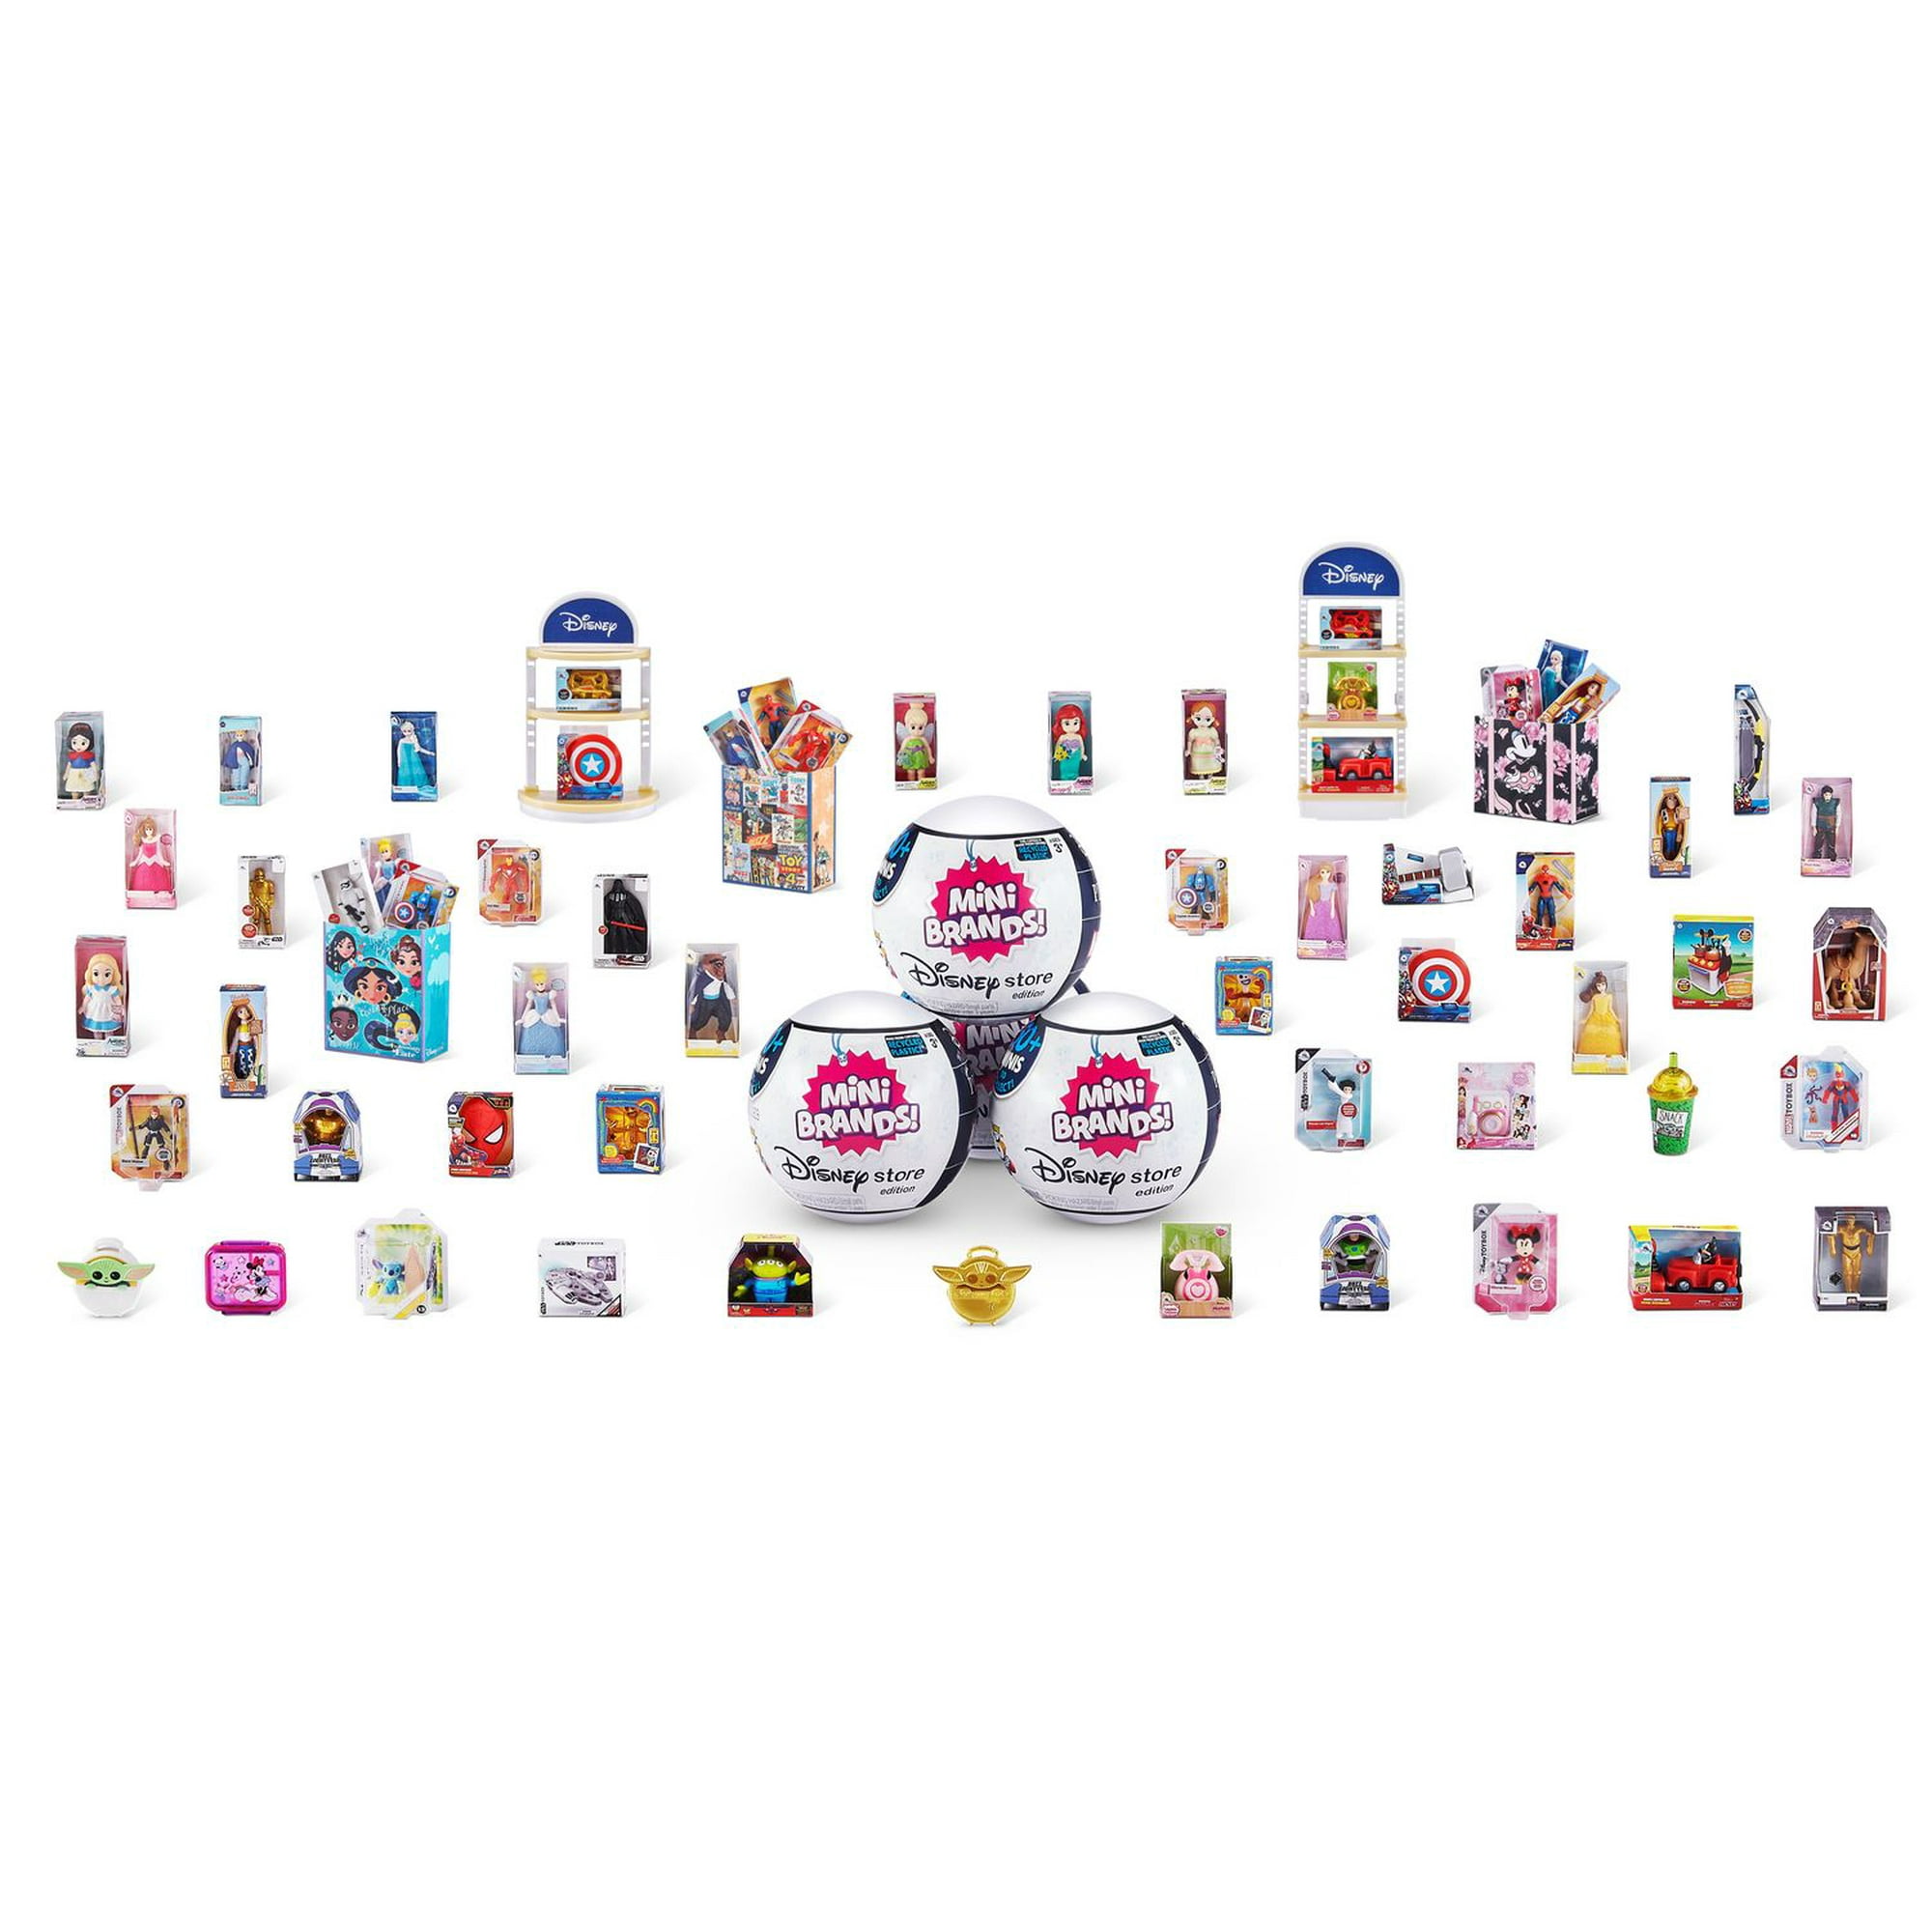 ZURU 5 Surprise Mini Brands! Series 2, Party Games & Activities -   Canada